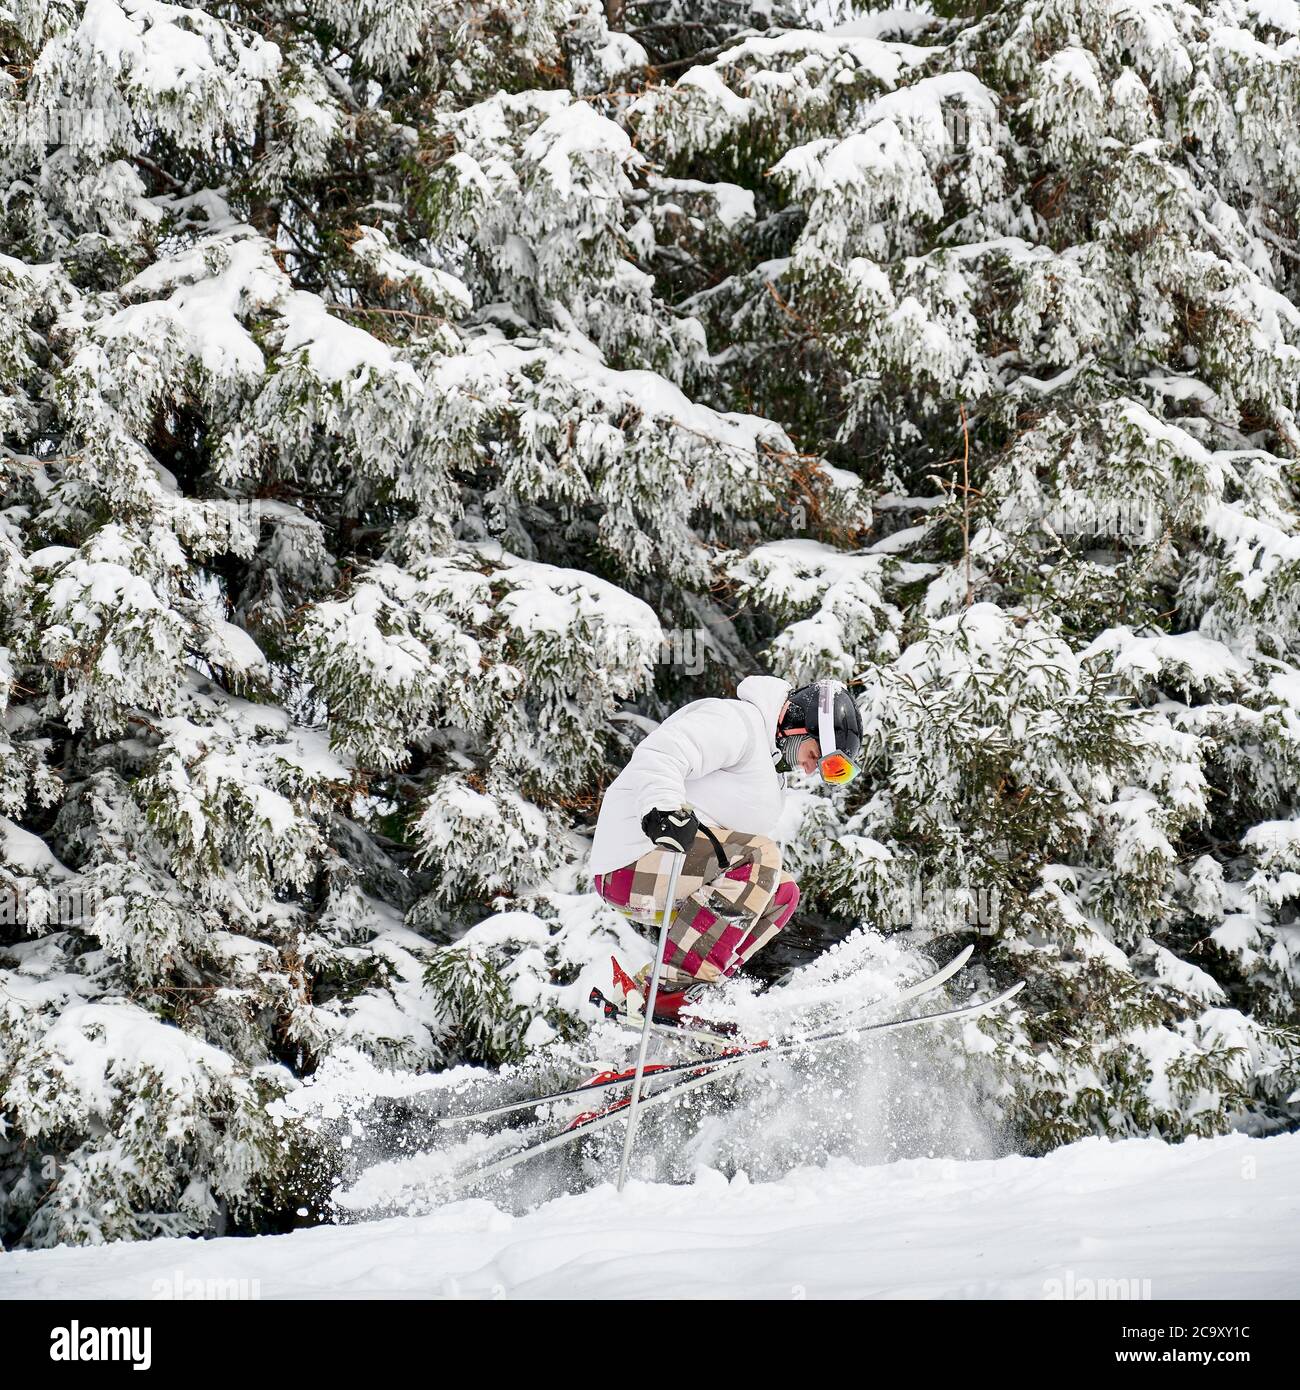 Skifahrer in weißen Jacke und Helm tun Tricks in den Bergen in der Wintersaison, Springen auf Hang Verschmelzung mit schönen schneebedeckten Fichtenwald Hintergrund. Seitenansicht. Konzept der Winter Arten von Sport. Stockfoto